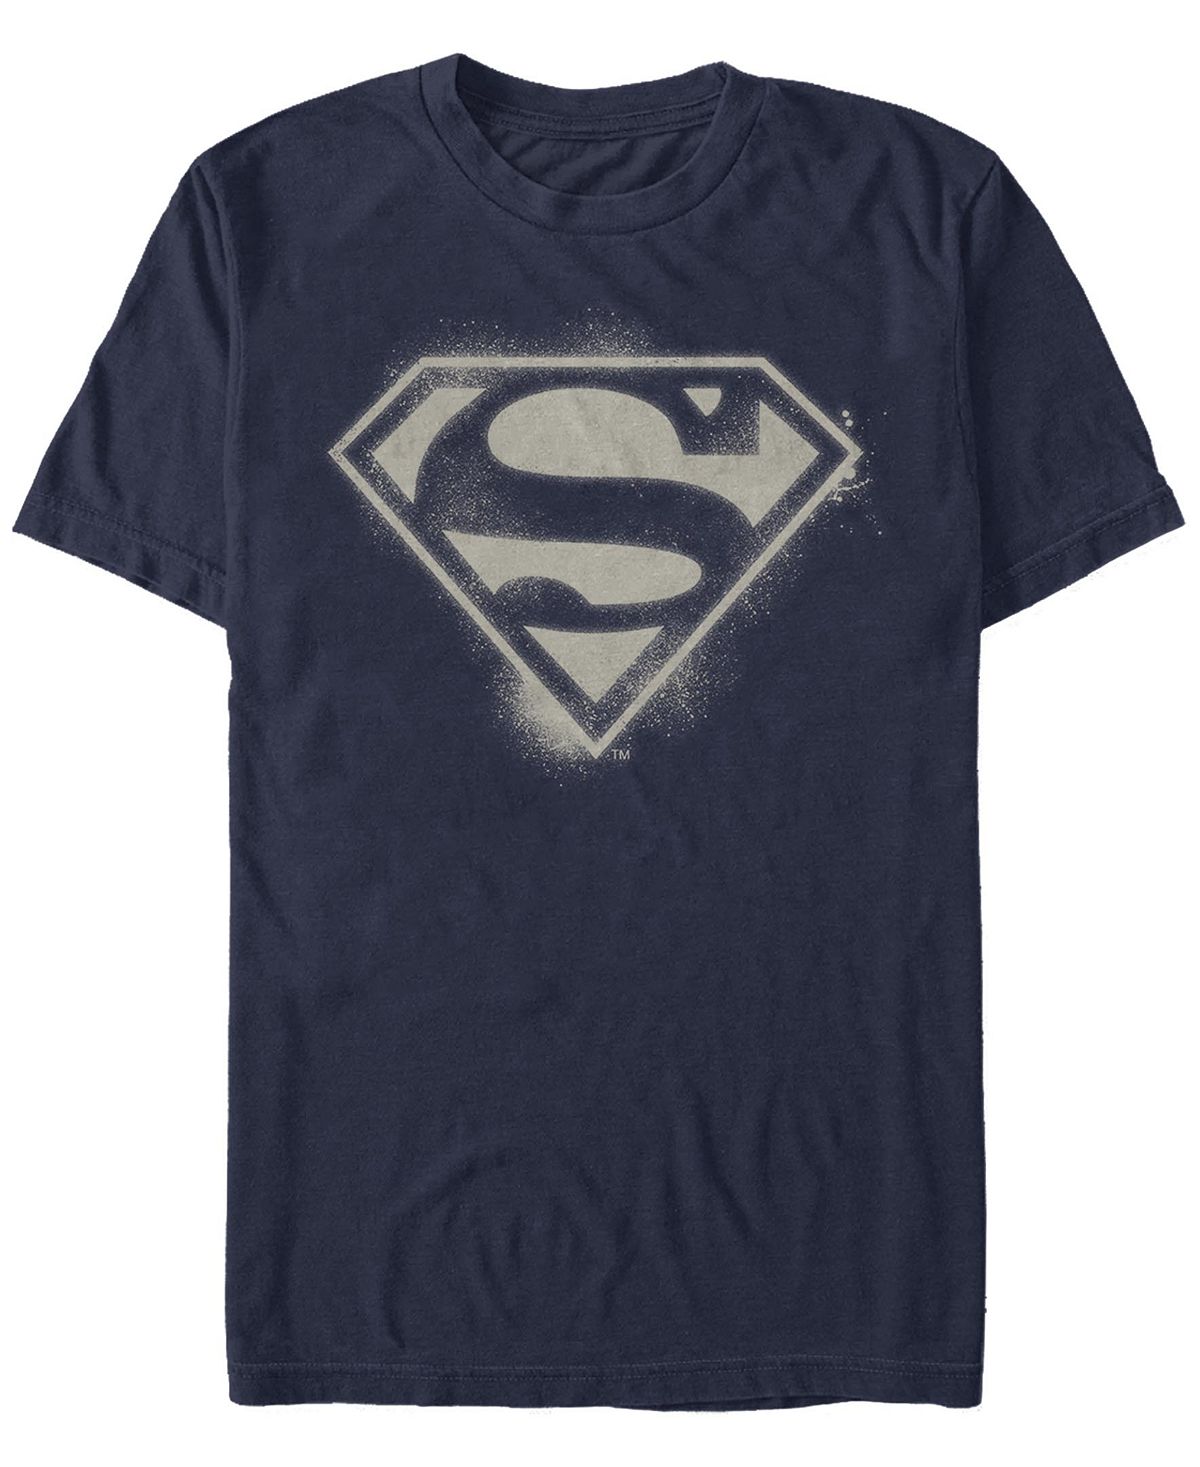 Мужская футболка с коротким рукавом и логотипом superman spray logo Fifth Sun, синий мягкая игрушка neca dc comics – superman 20 см